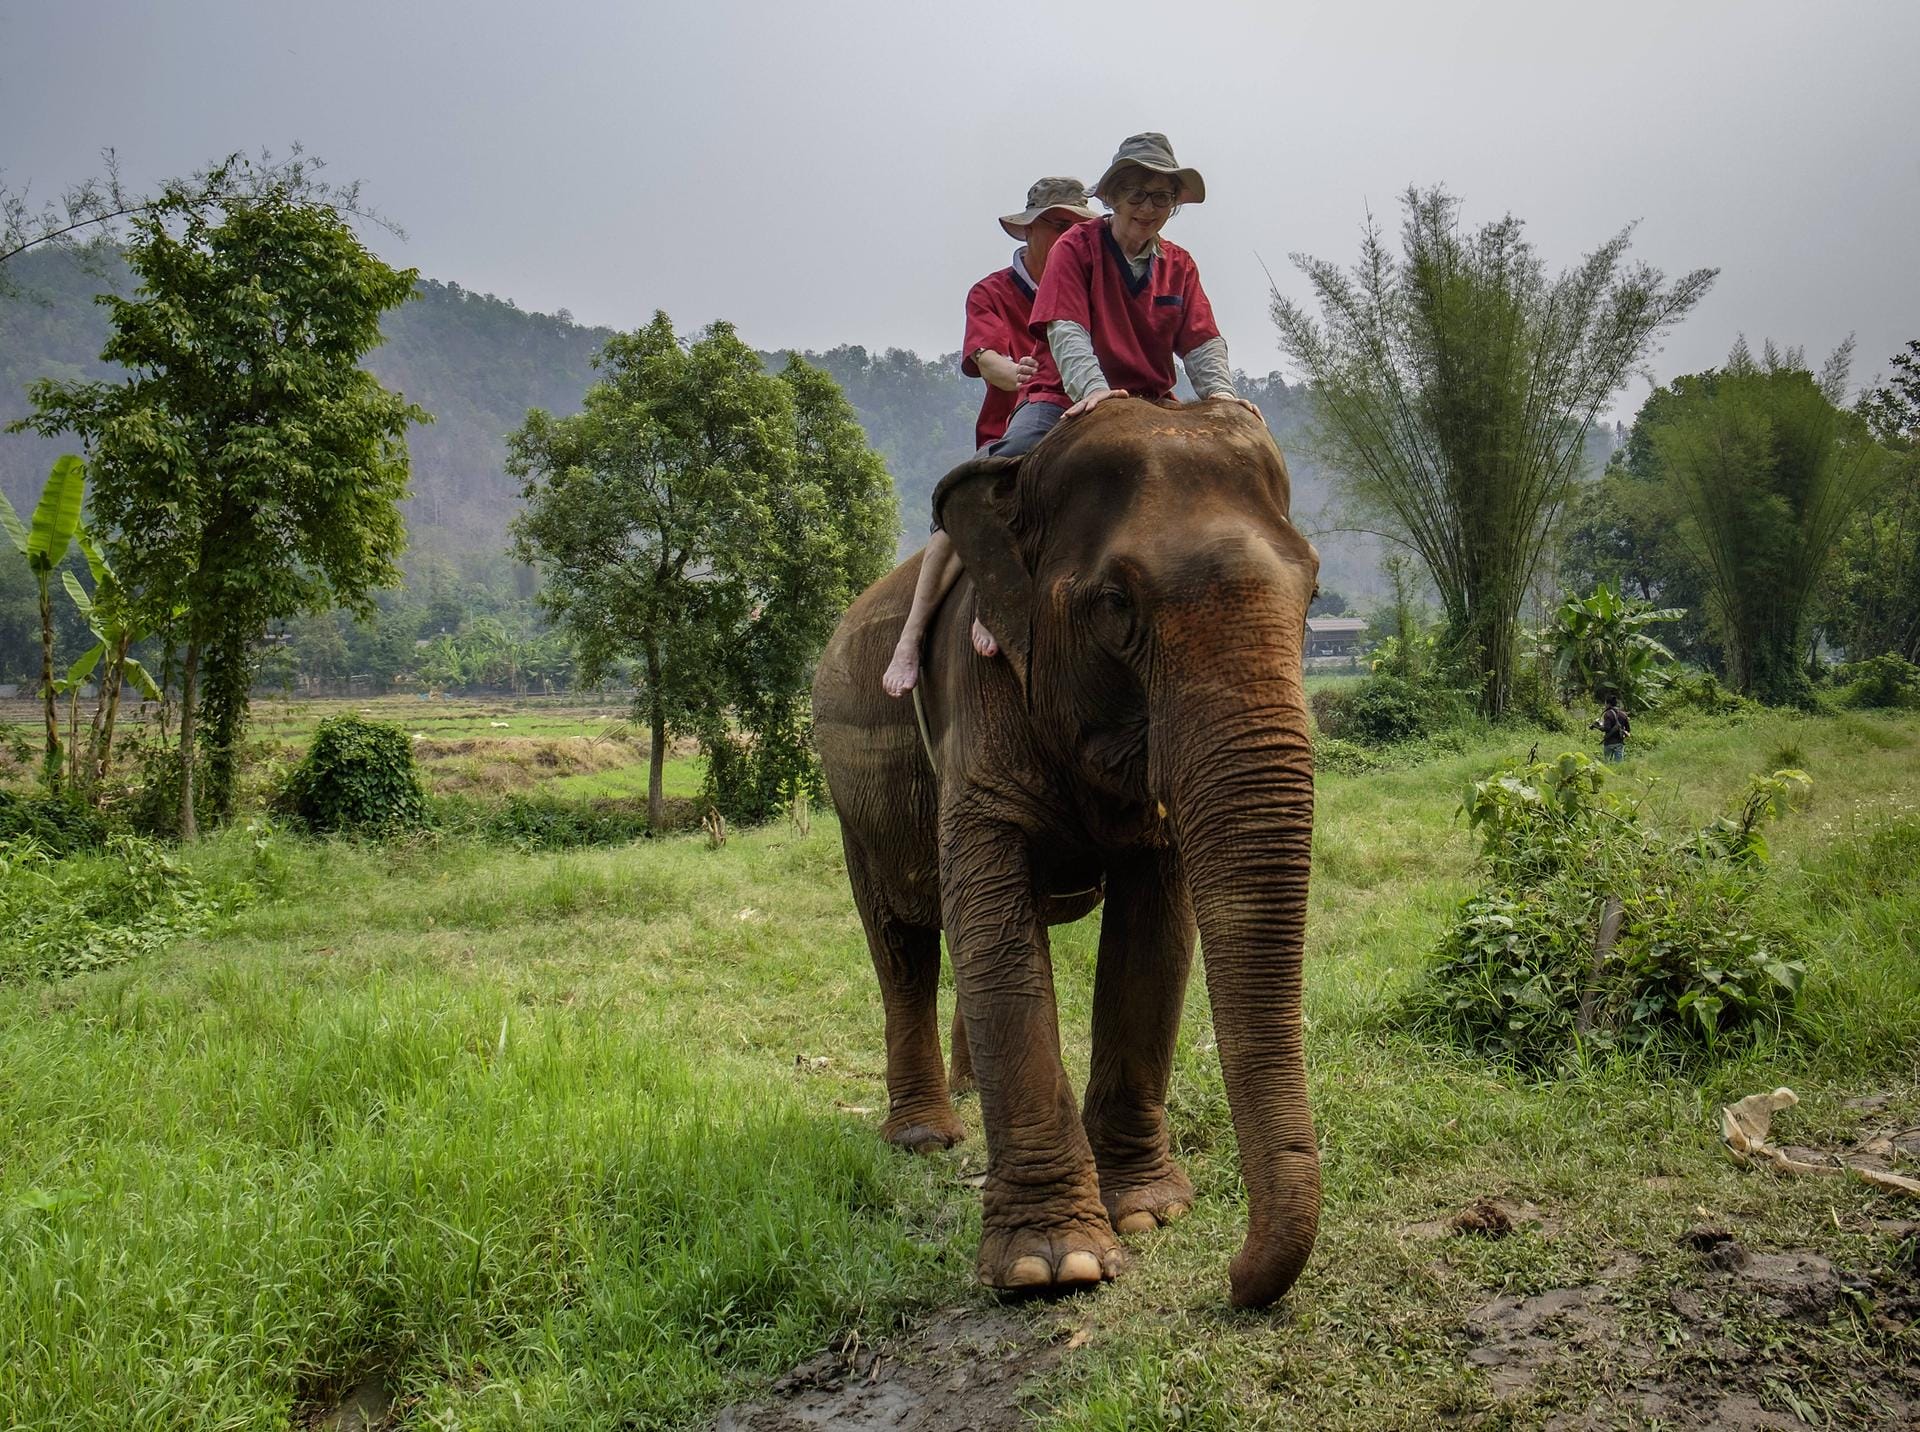 Elefantenreiten in Thailand: Um die Tiere zu schützen, sollten Sie auf diese Attraktion verzichten.